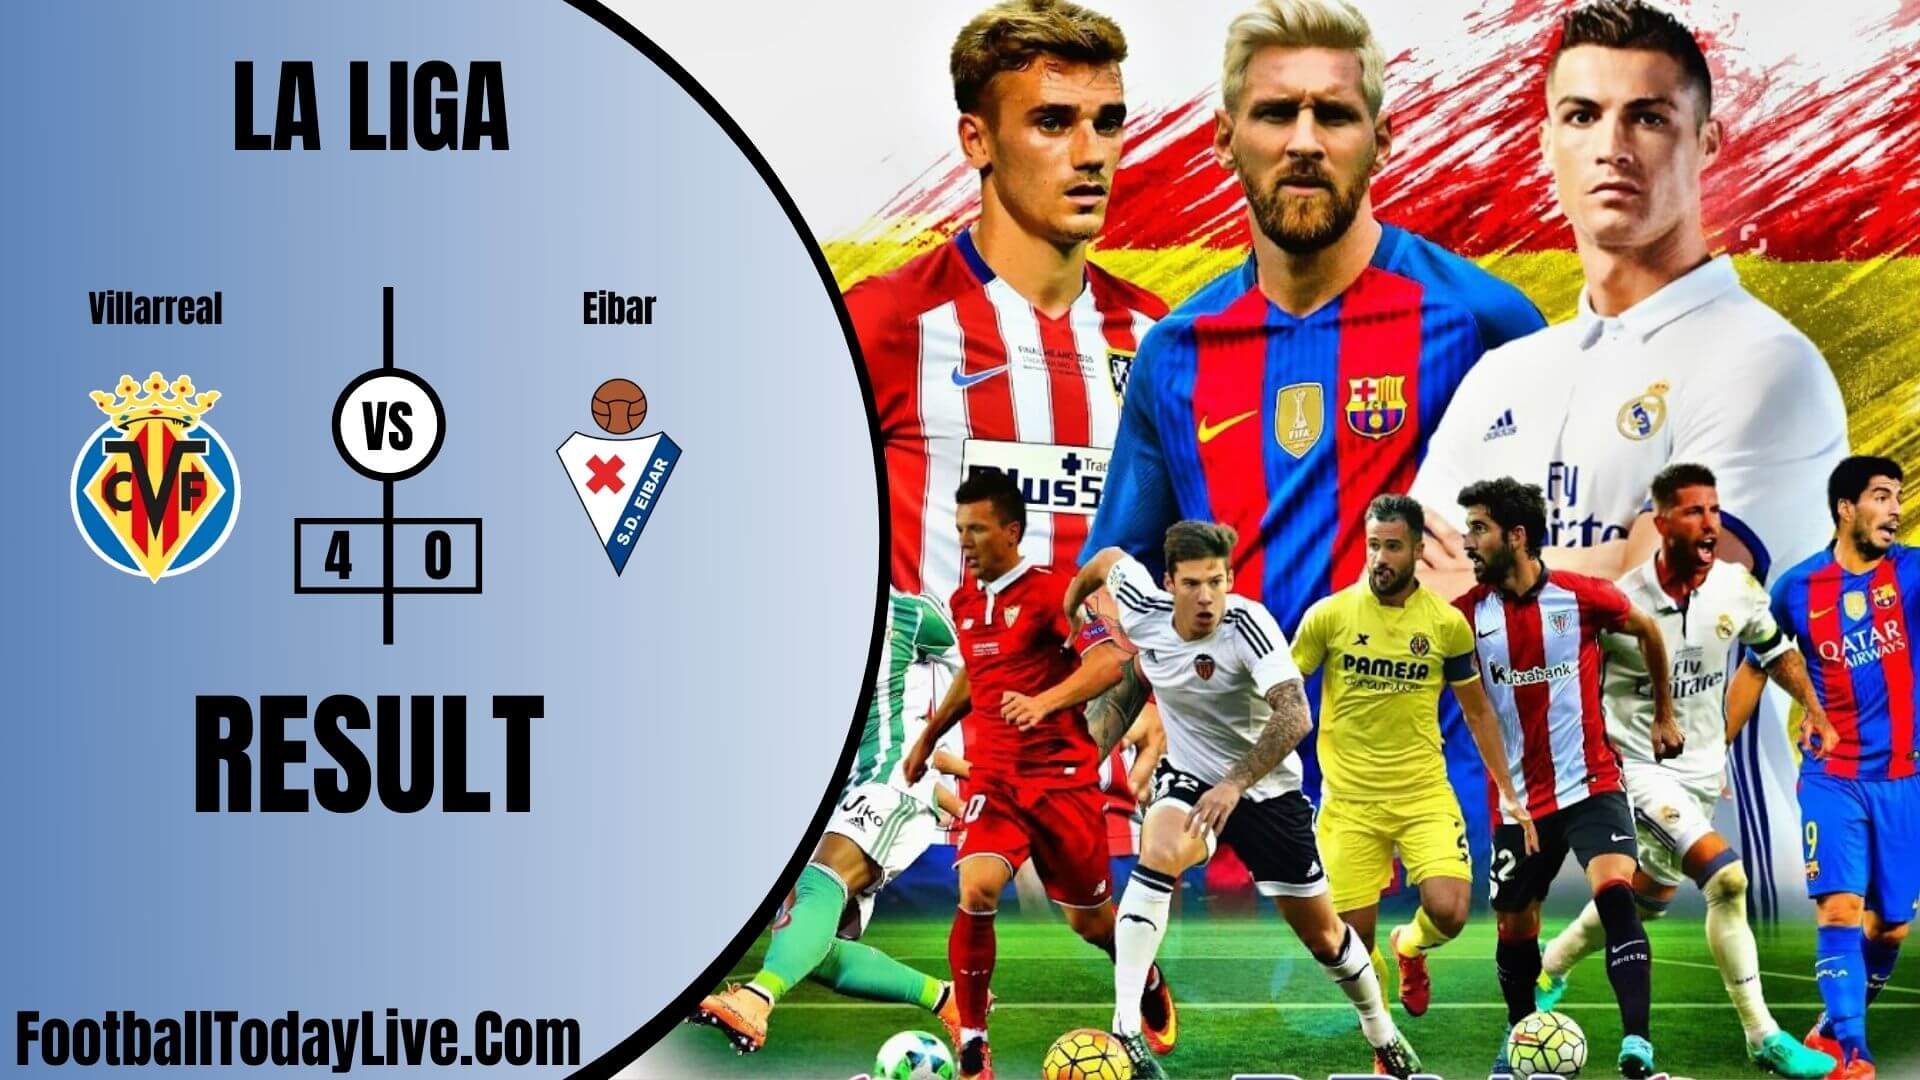 Villarreal Vs Eibar | La Liga Week 38 Result 2020